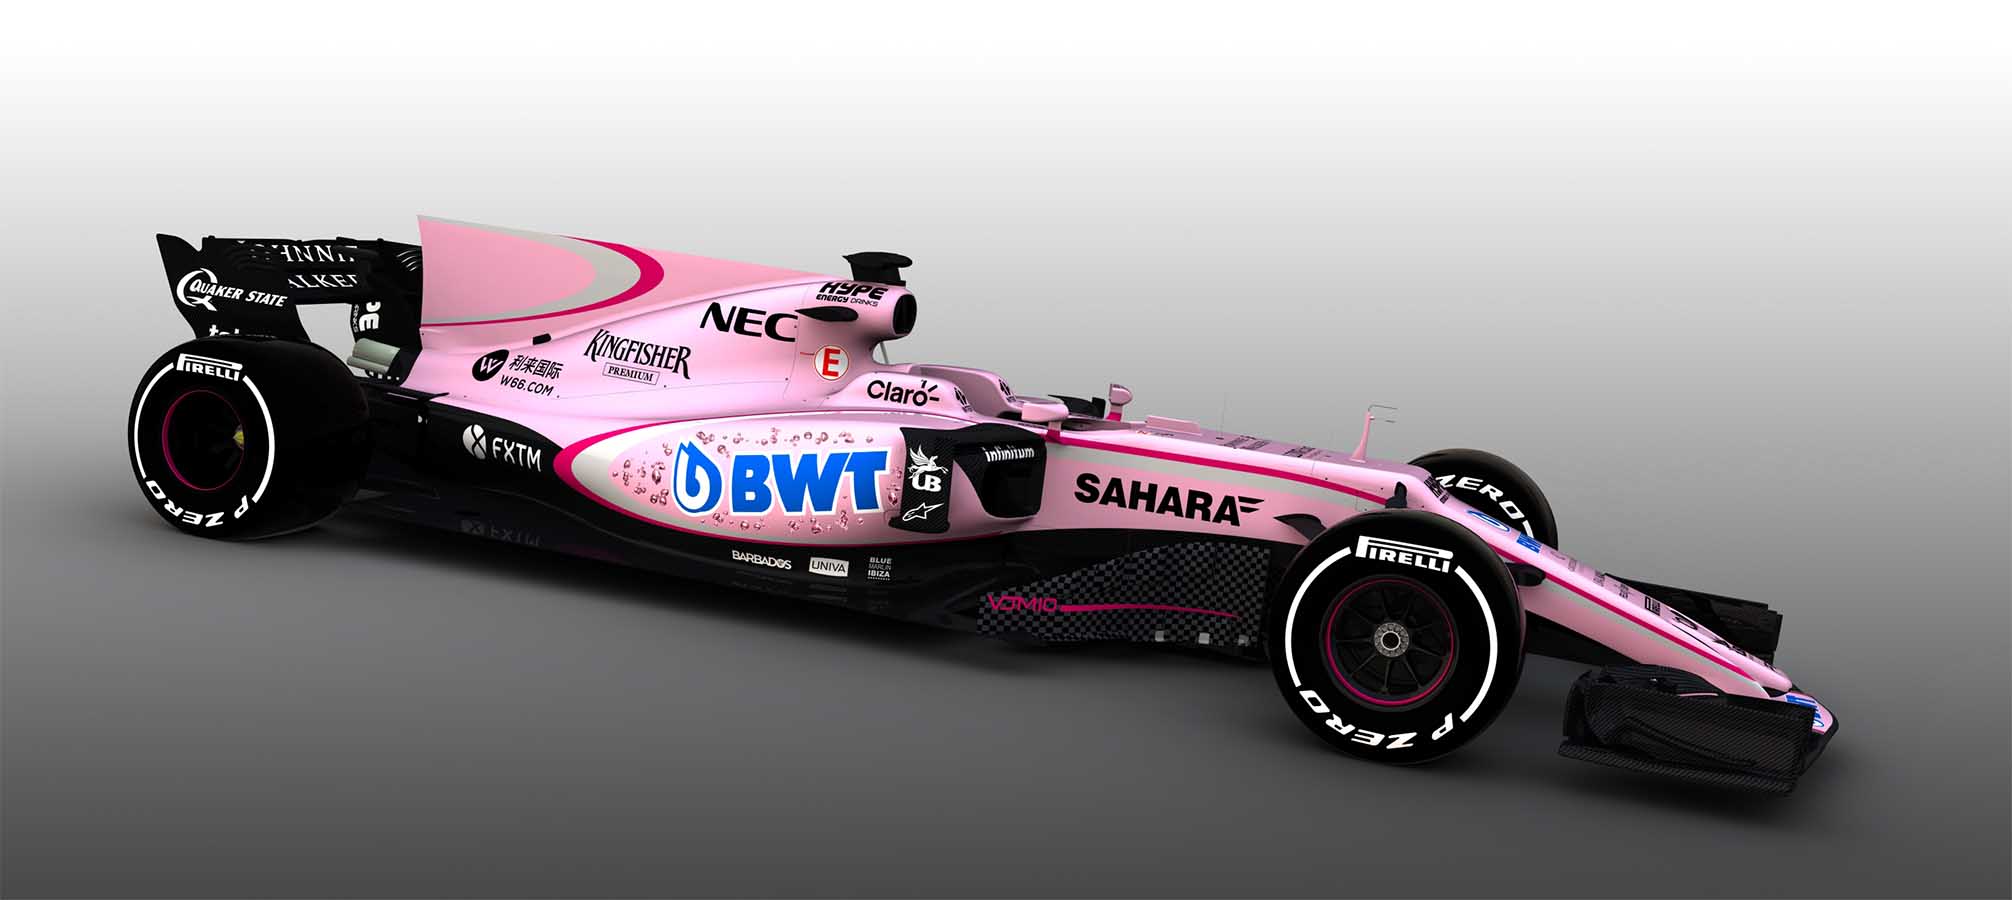 F1 i alla regnbågens färger – klart att Force India byter färg